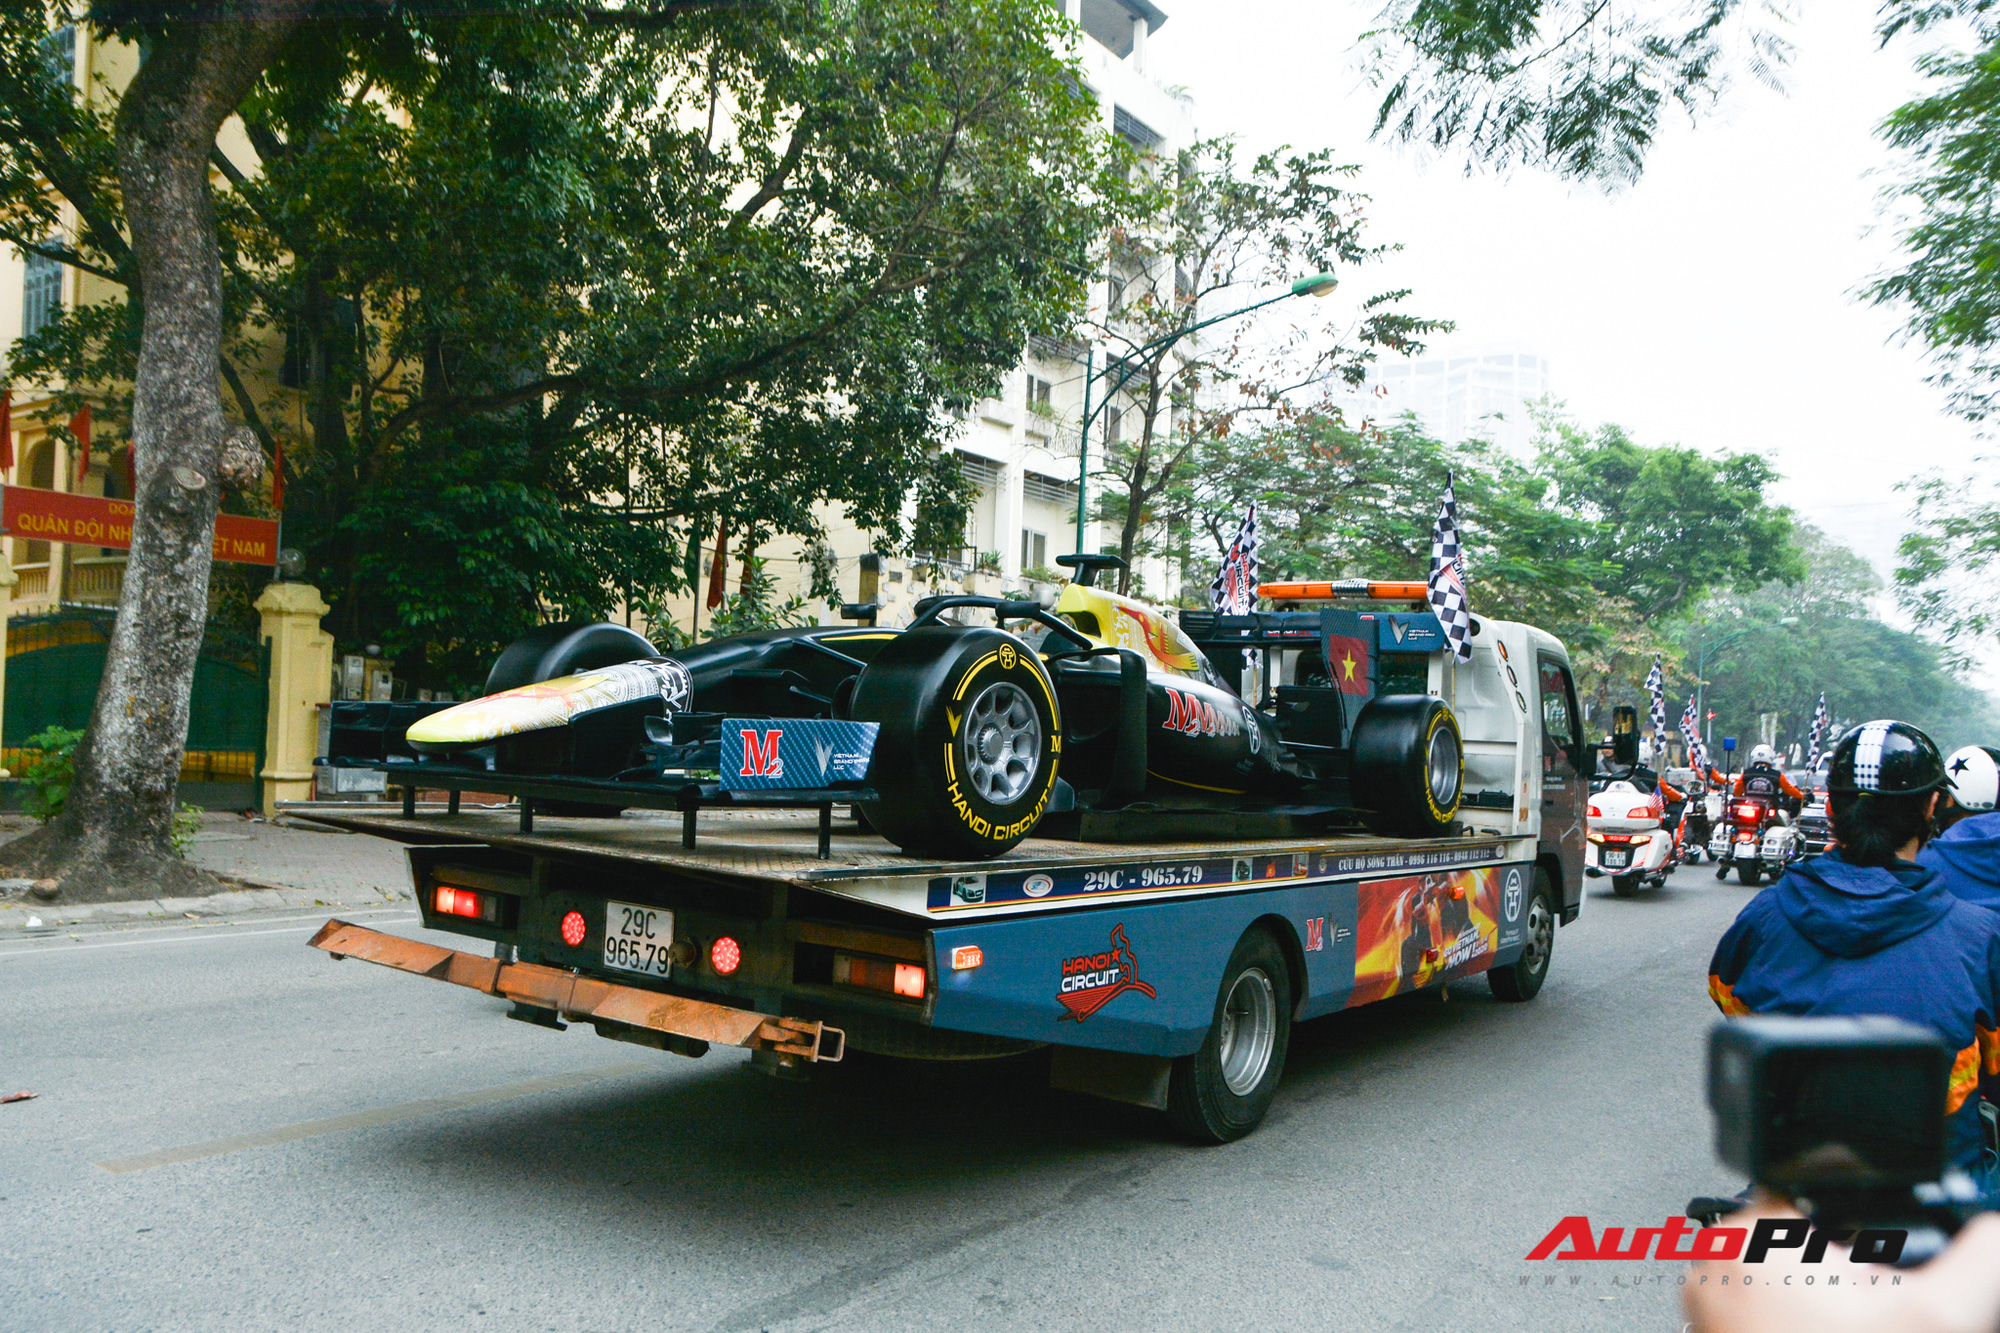 Ferrari F12 Berlinetta hộ tống xe đua F1 cùng dàn mô tô diễu hành vòng quanh Thủ đô Hà Nội - Ảnh 2.